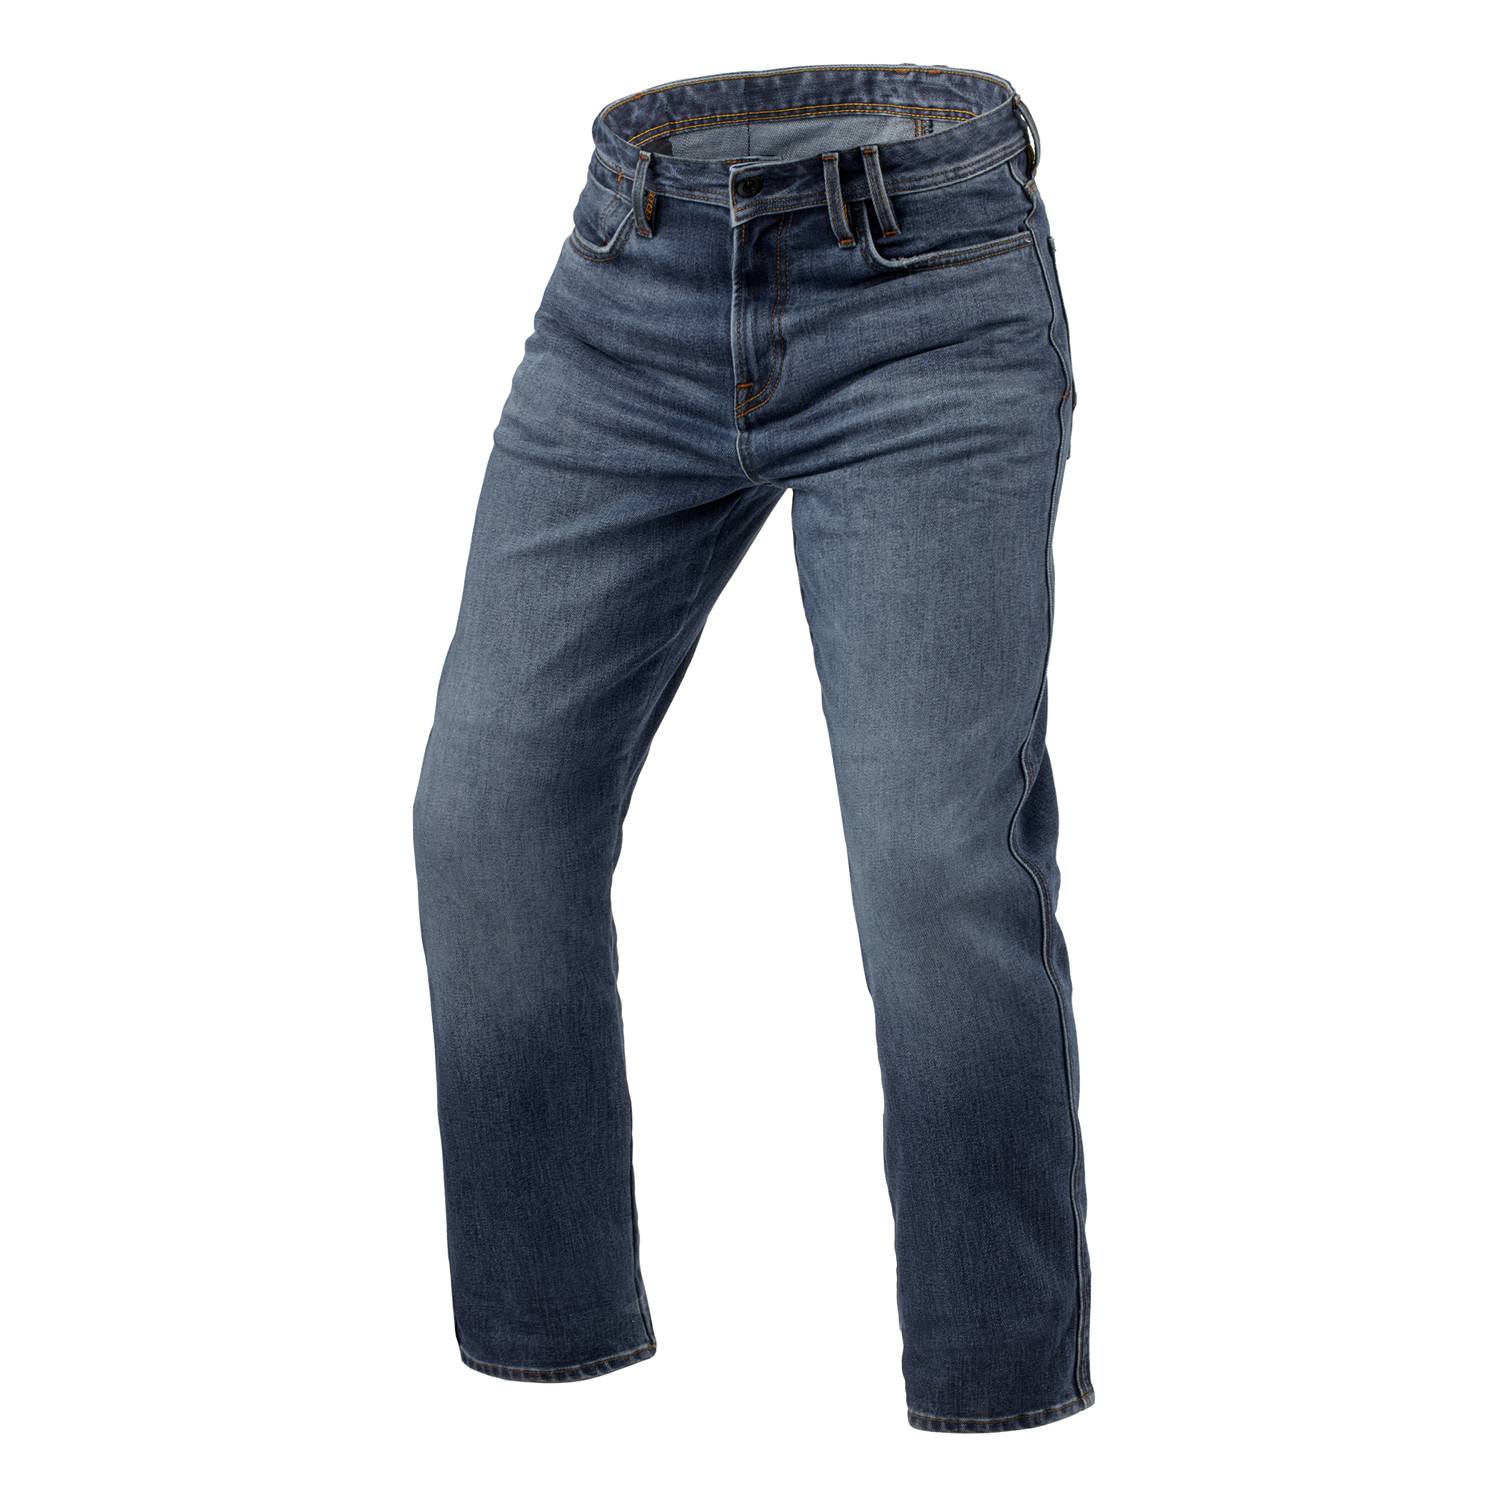 Image of REV'IT! Jeans Lombard 3 RF Mid Blue Stone L32 Motorcycle Jeans Size L32/W30 EN